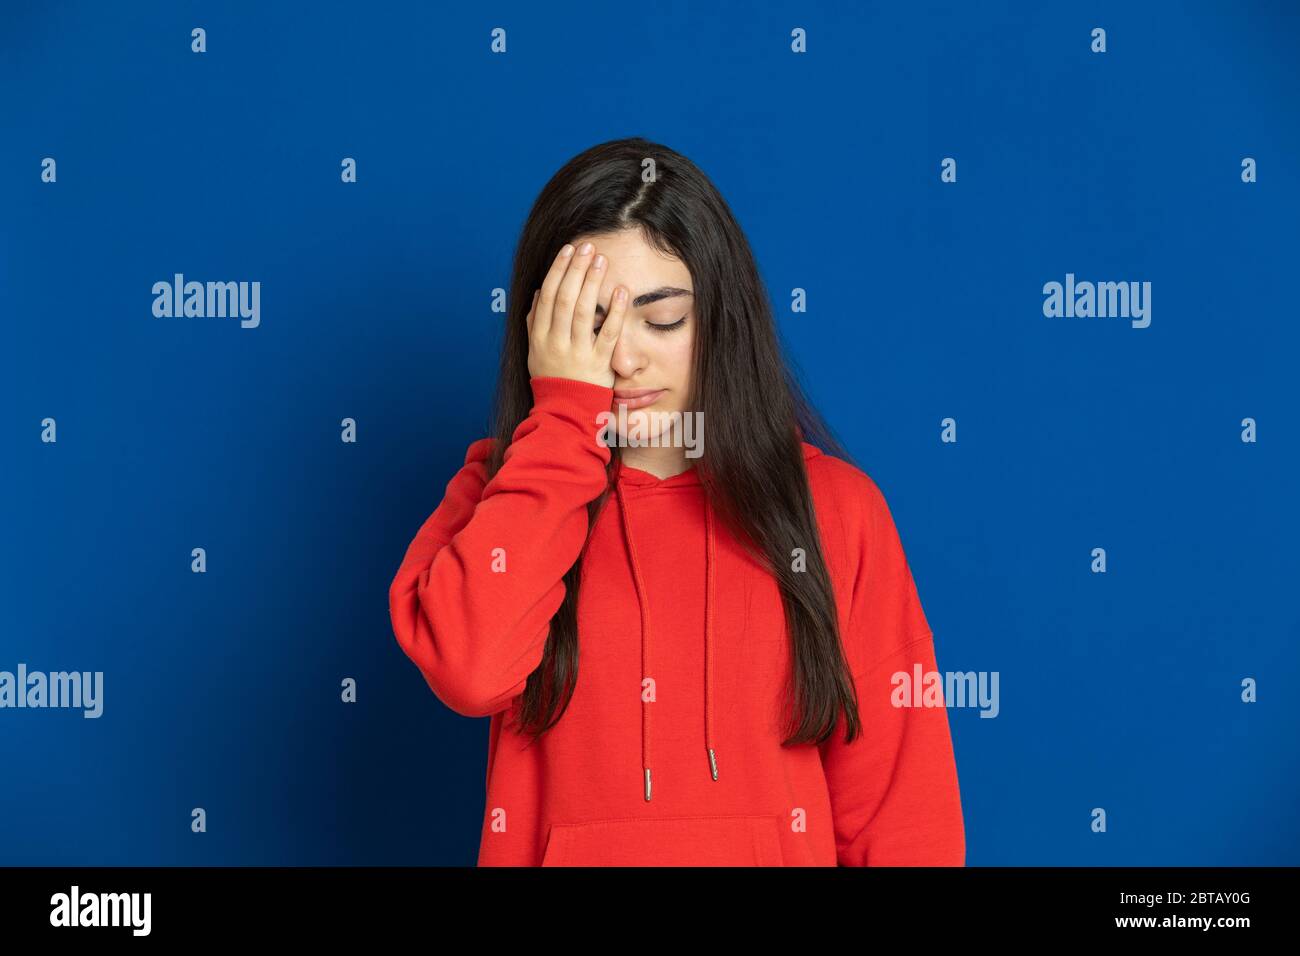 Giovane ragazza brunetta con una maglia rossa su sfondo blu Foto Stock